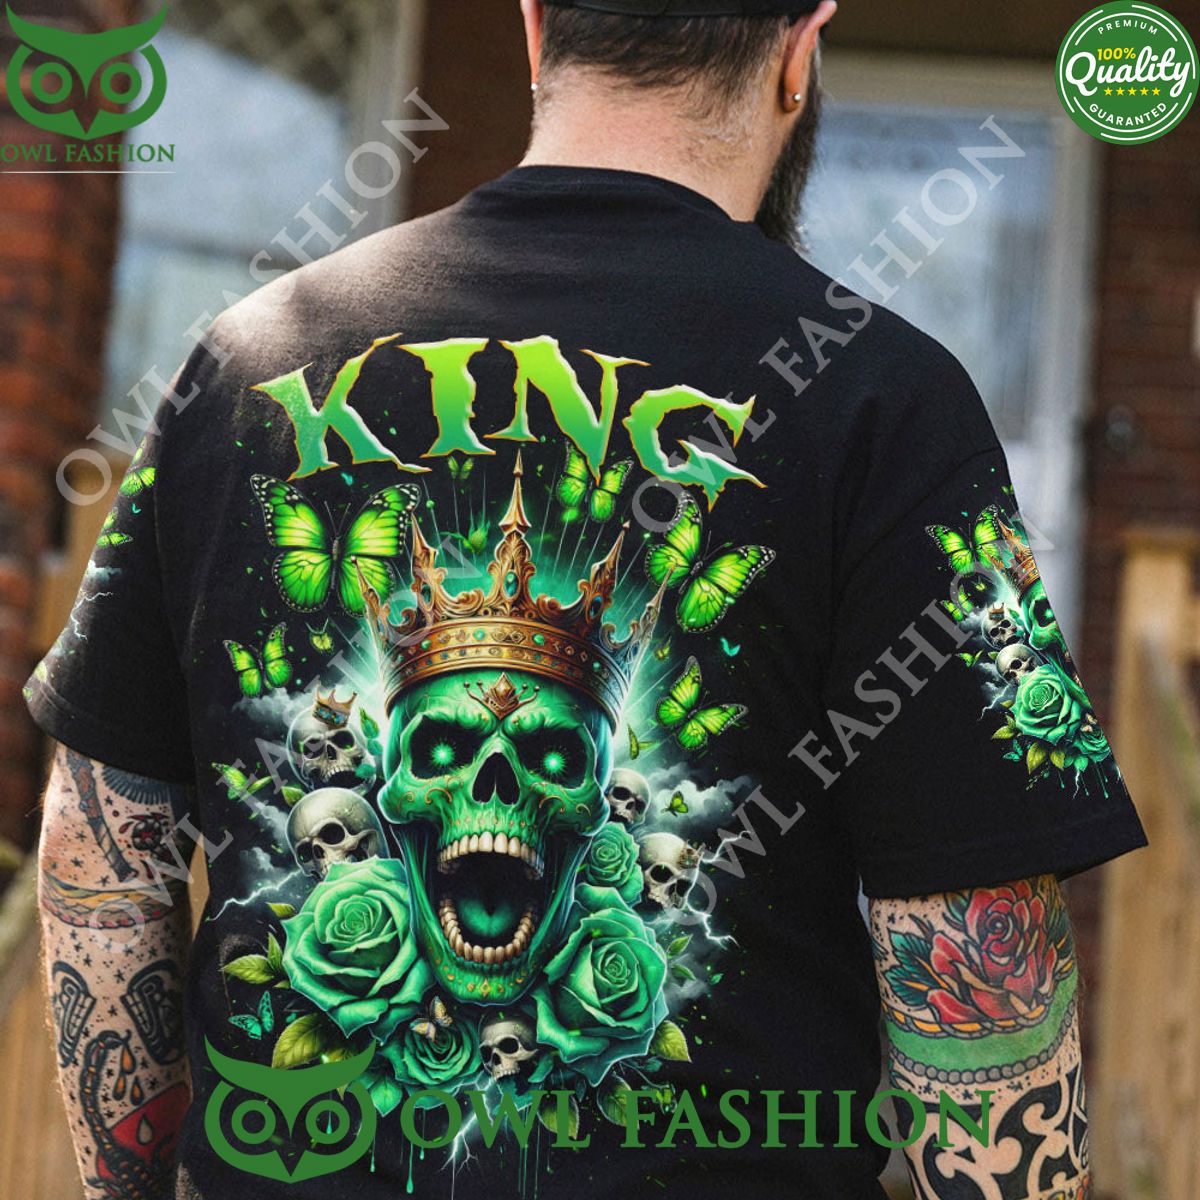 king queen skull rose couple aop hoodie shirt 1 r0a5d.jpg